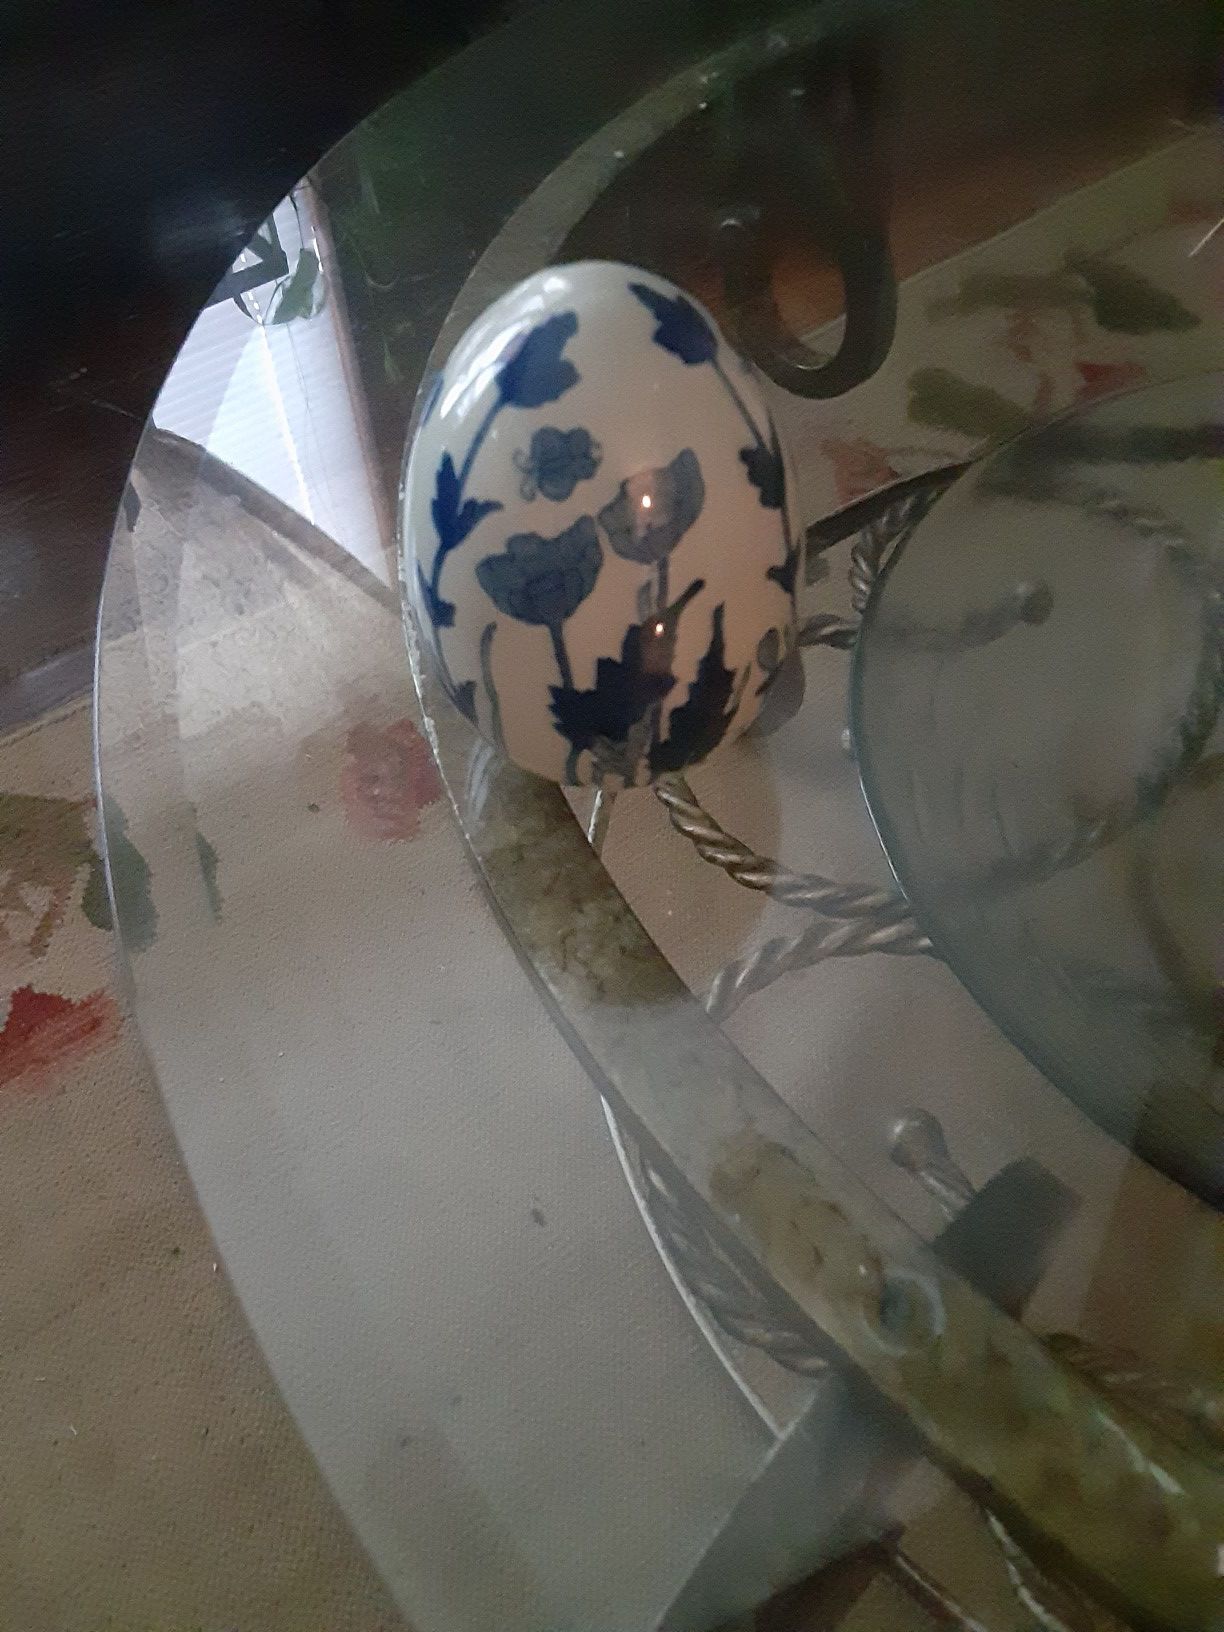 Blue and white ceramic egg